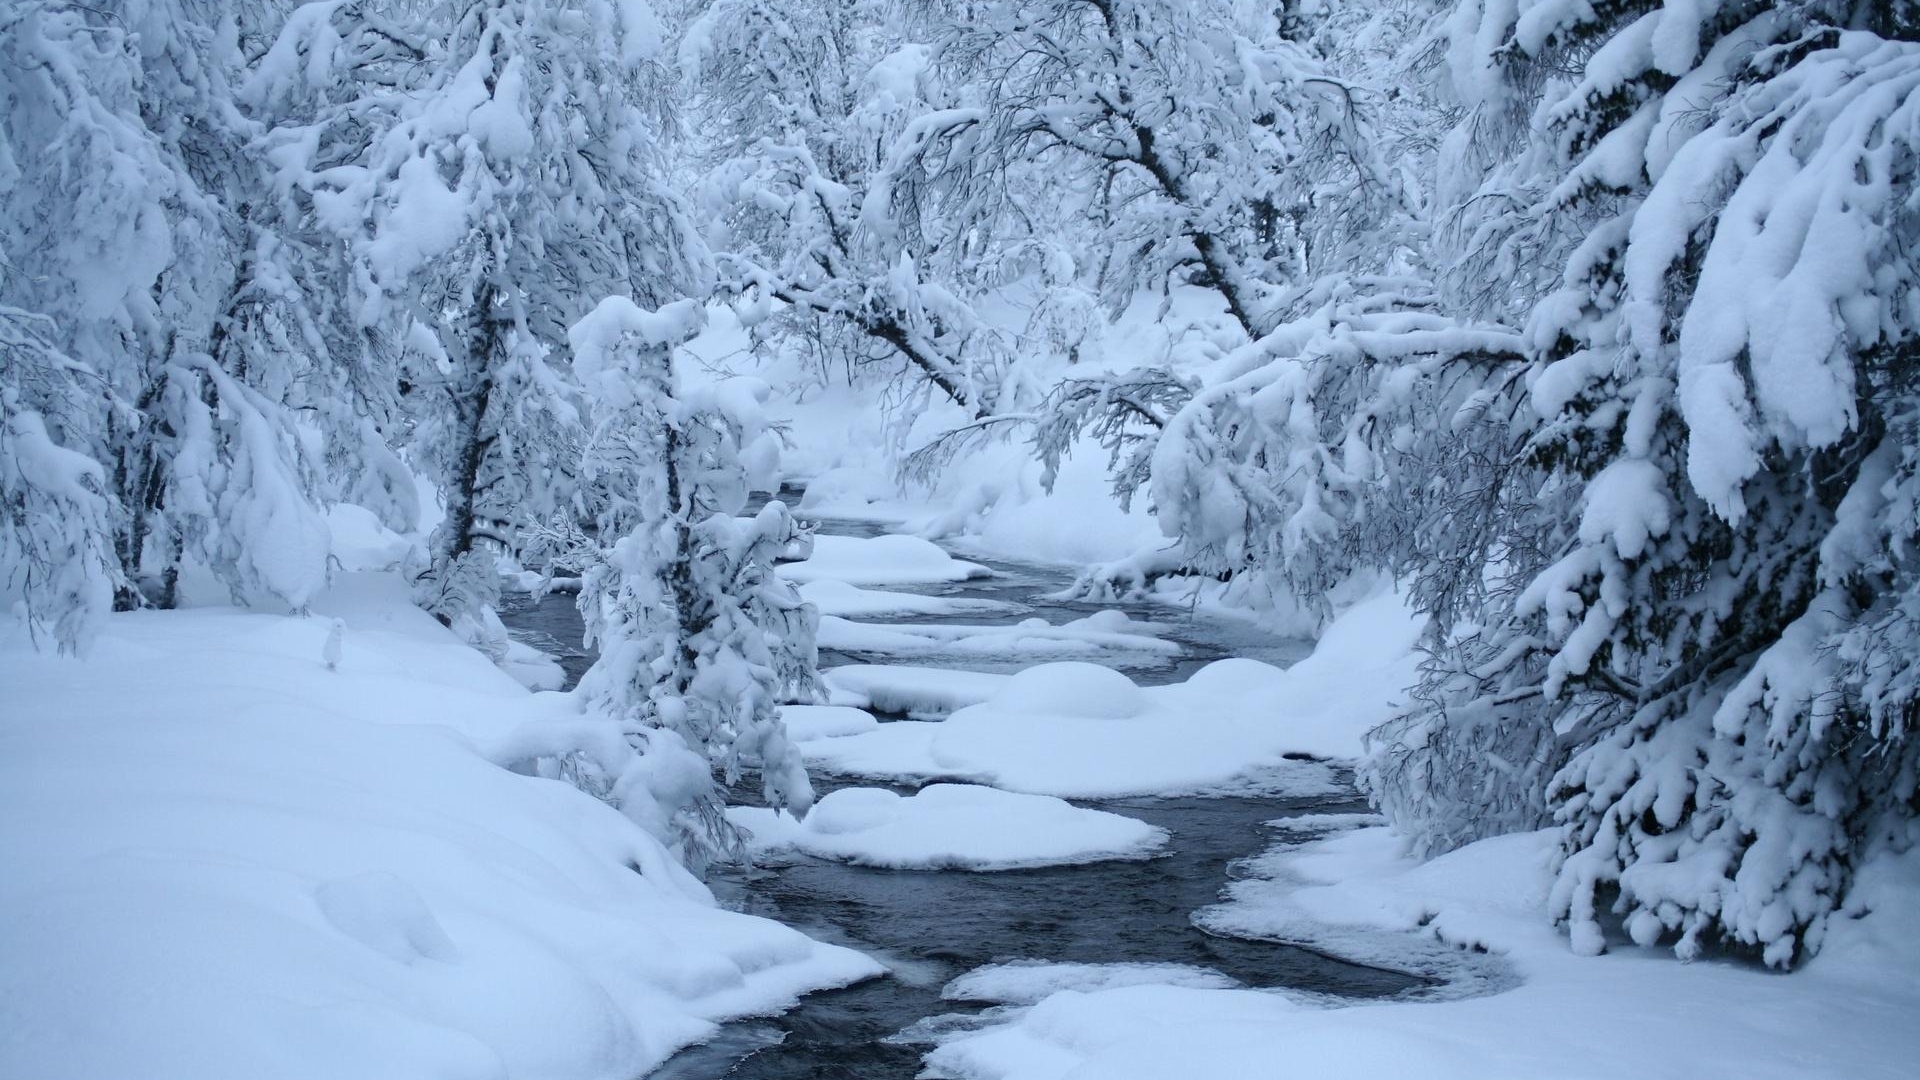 雪景壁纸 精选好看的自然风景冬天雪景高清电脑桌面壁纸下载5p